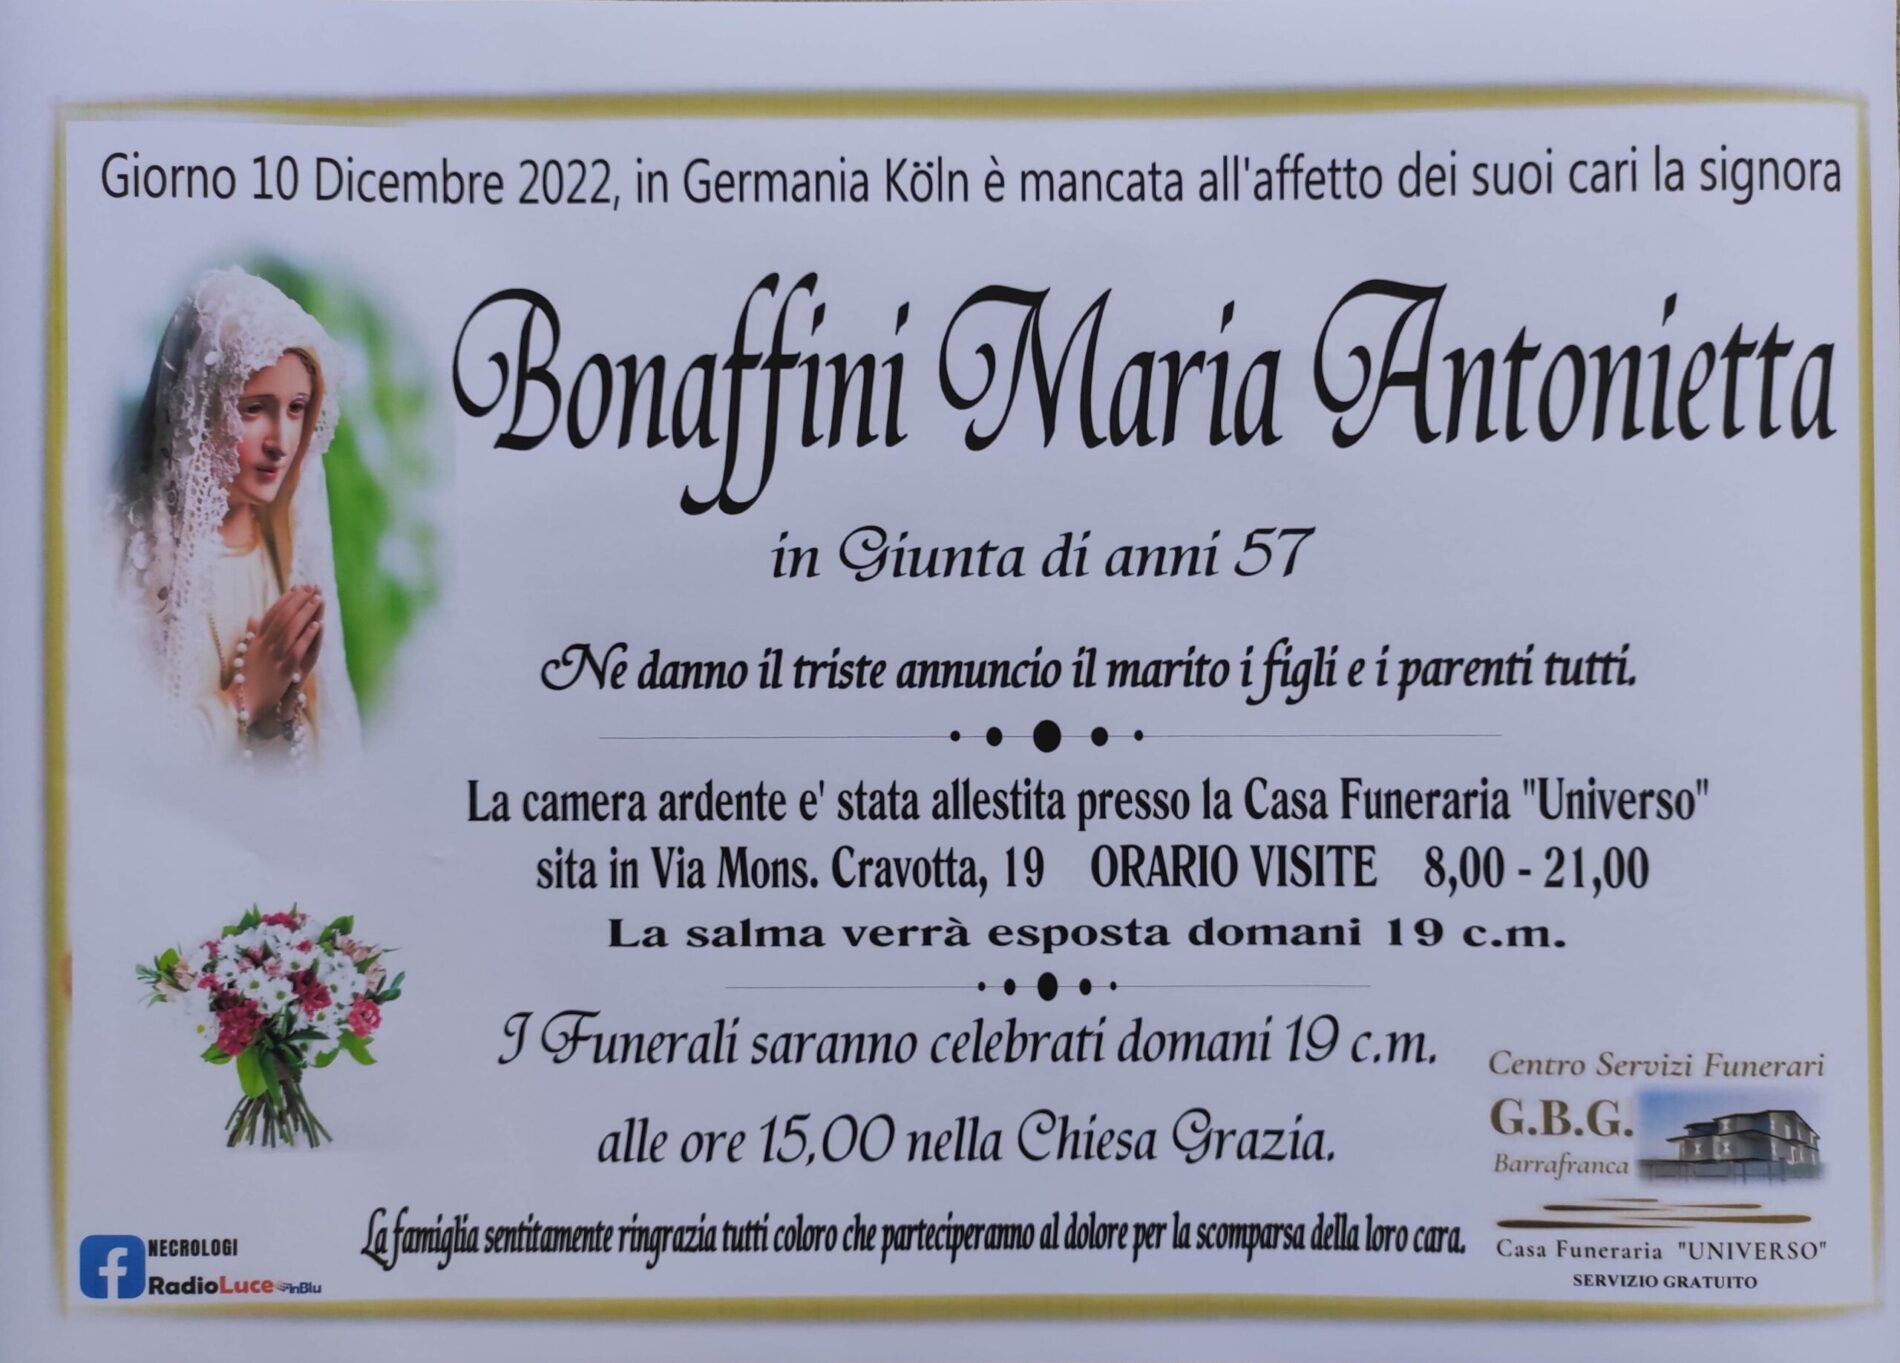 ANNUNCIO CENTRO SERVIZI FUNERARI G.B.G. Sig.ra Bonaffini Maria Antonietta  di anni 57